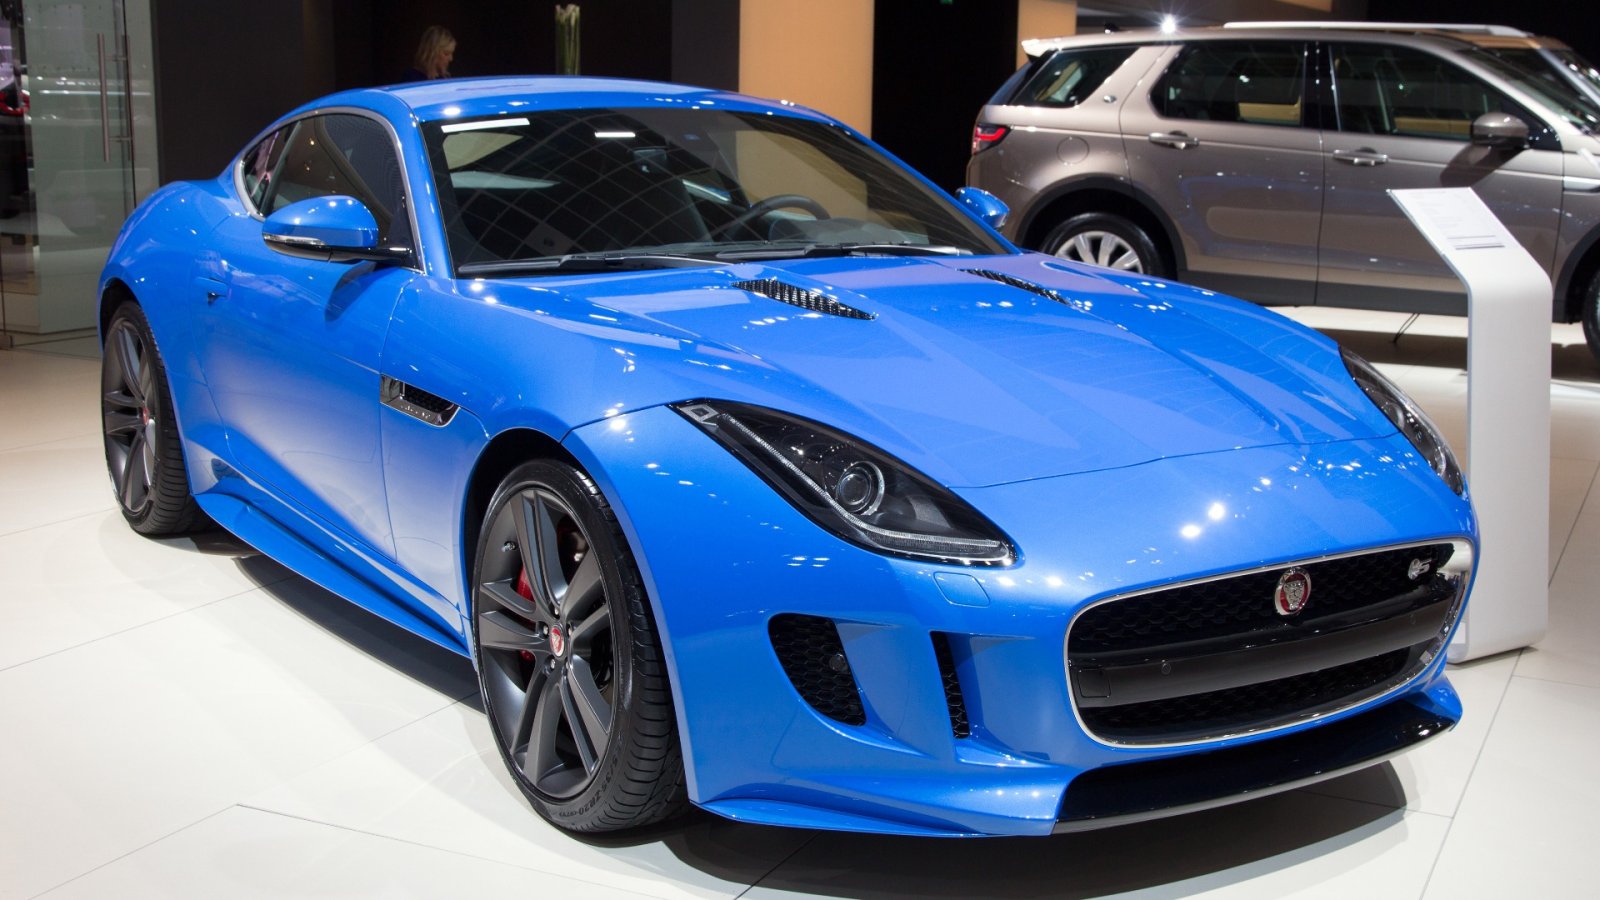 Kaikkein innostava ajokokemus: Jaguarin uusi F-Type R75 Coupe